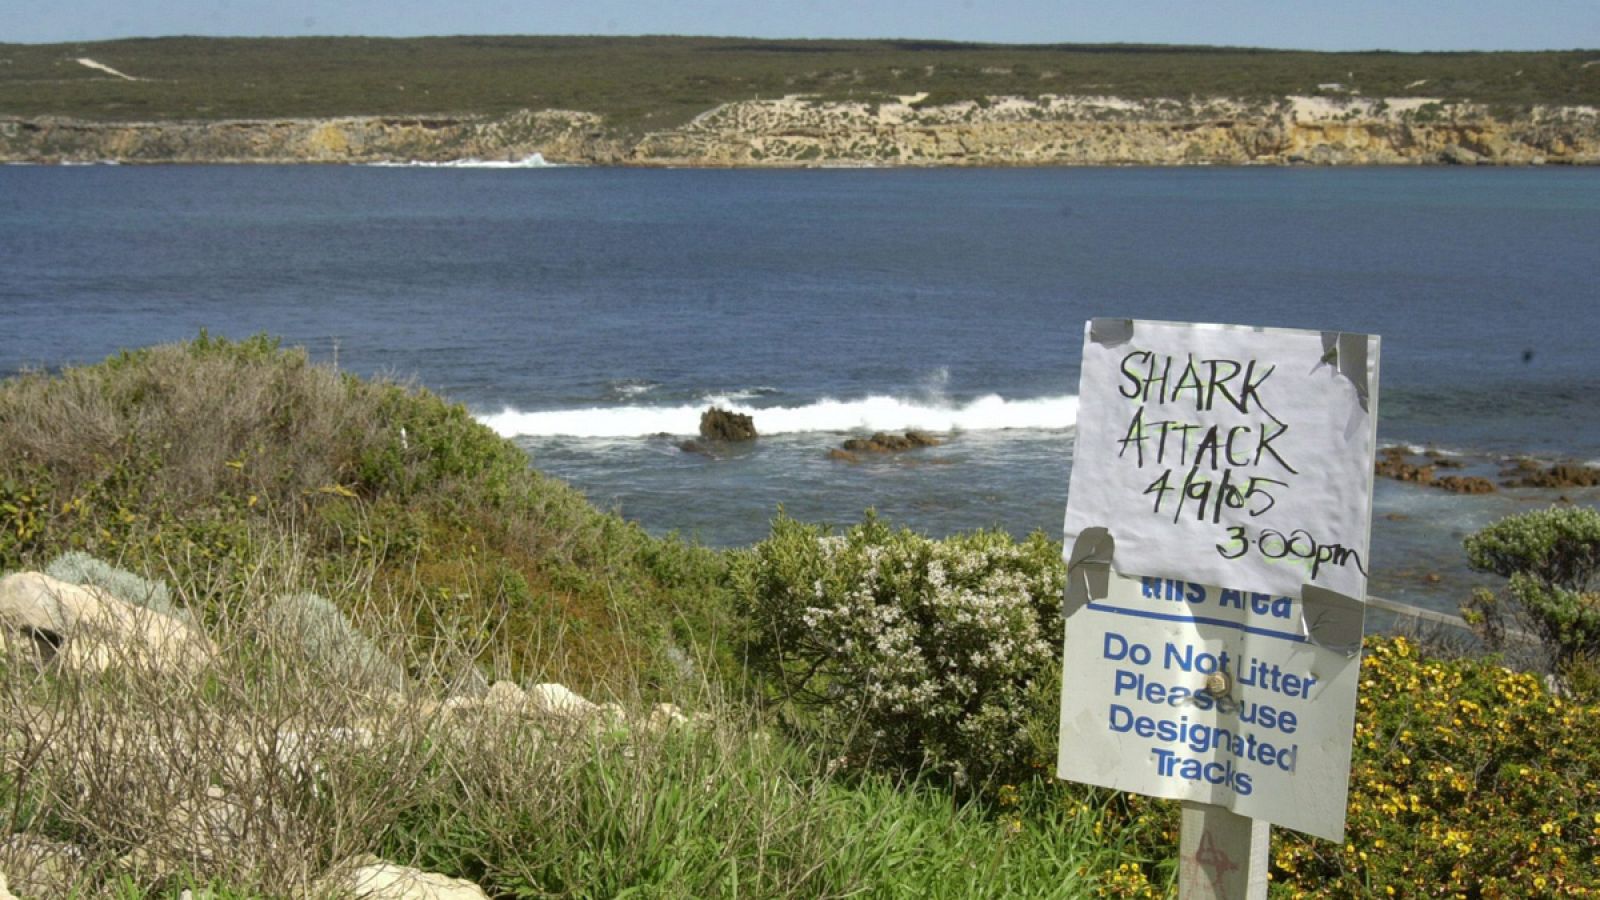 Los ataques de tiburones son muy habituales en las playas australianas.